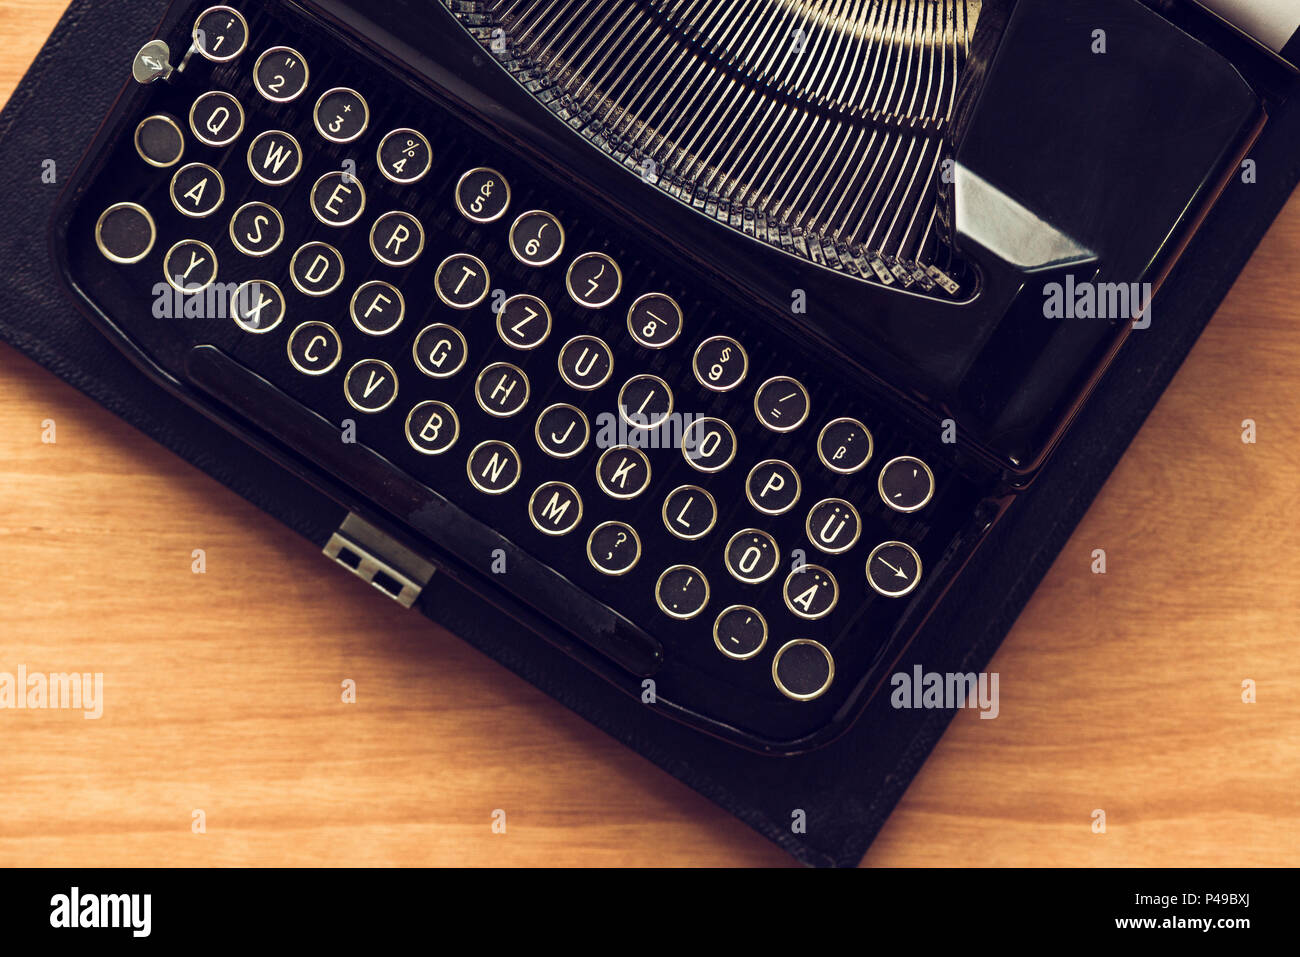 Vintage máquina typewriter sobre escritores escritorio, vista superior plana imagen conceptual laicos de blogs, publicación, periodismo o la poesía. Foto de stock